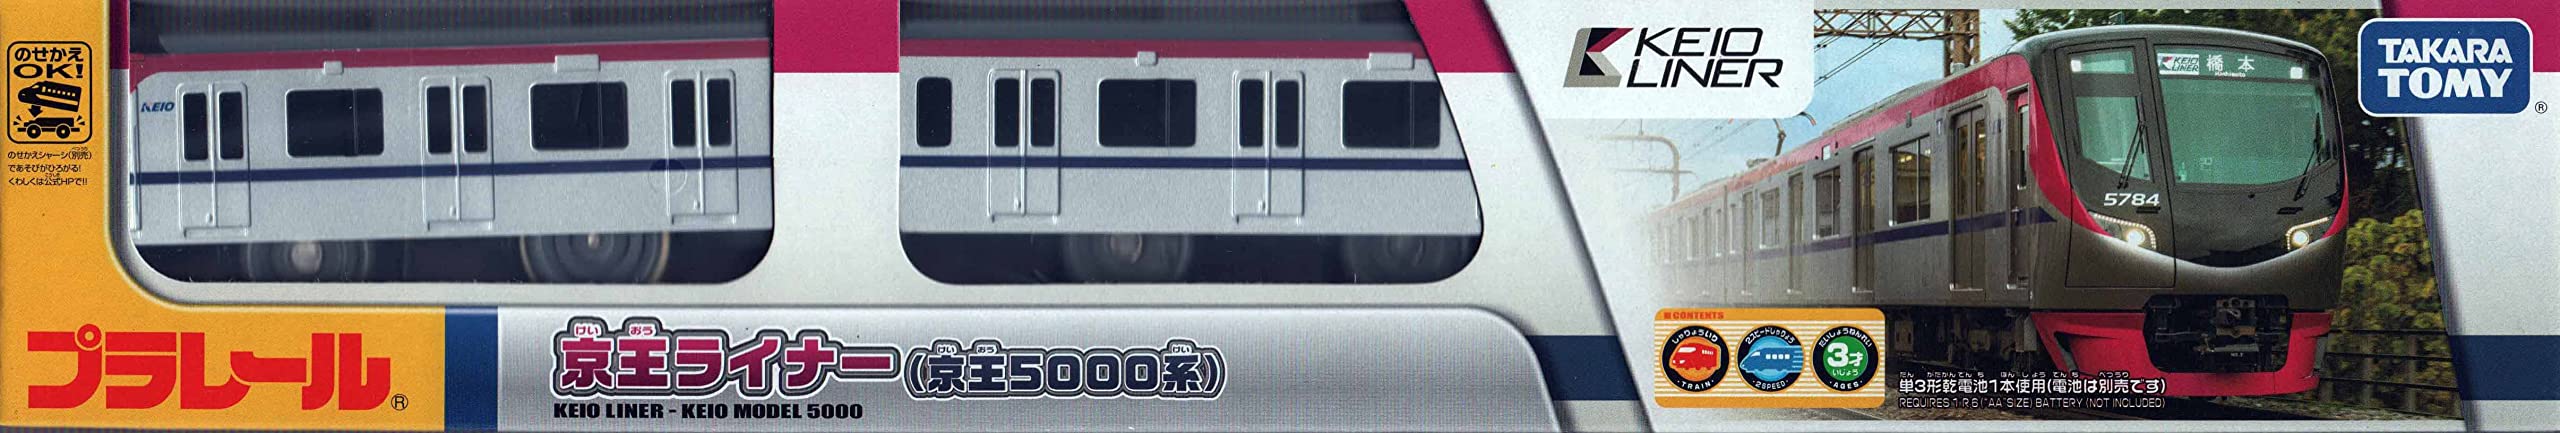 Takara Tomy Plarail Keio 5000 Series Liner Train Set